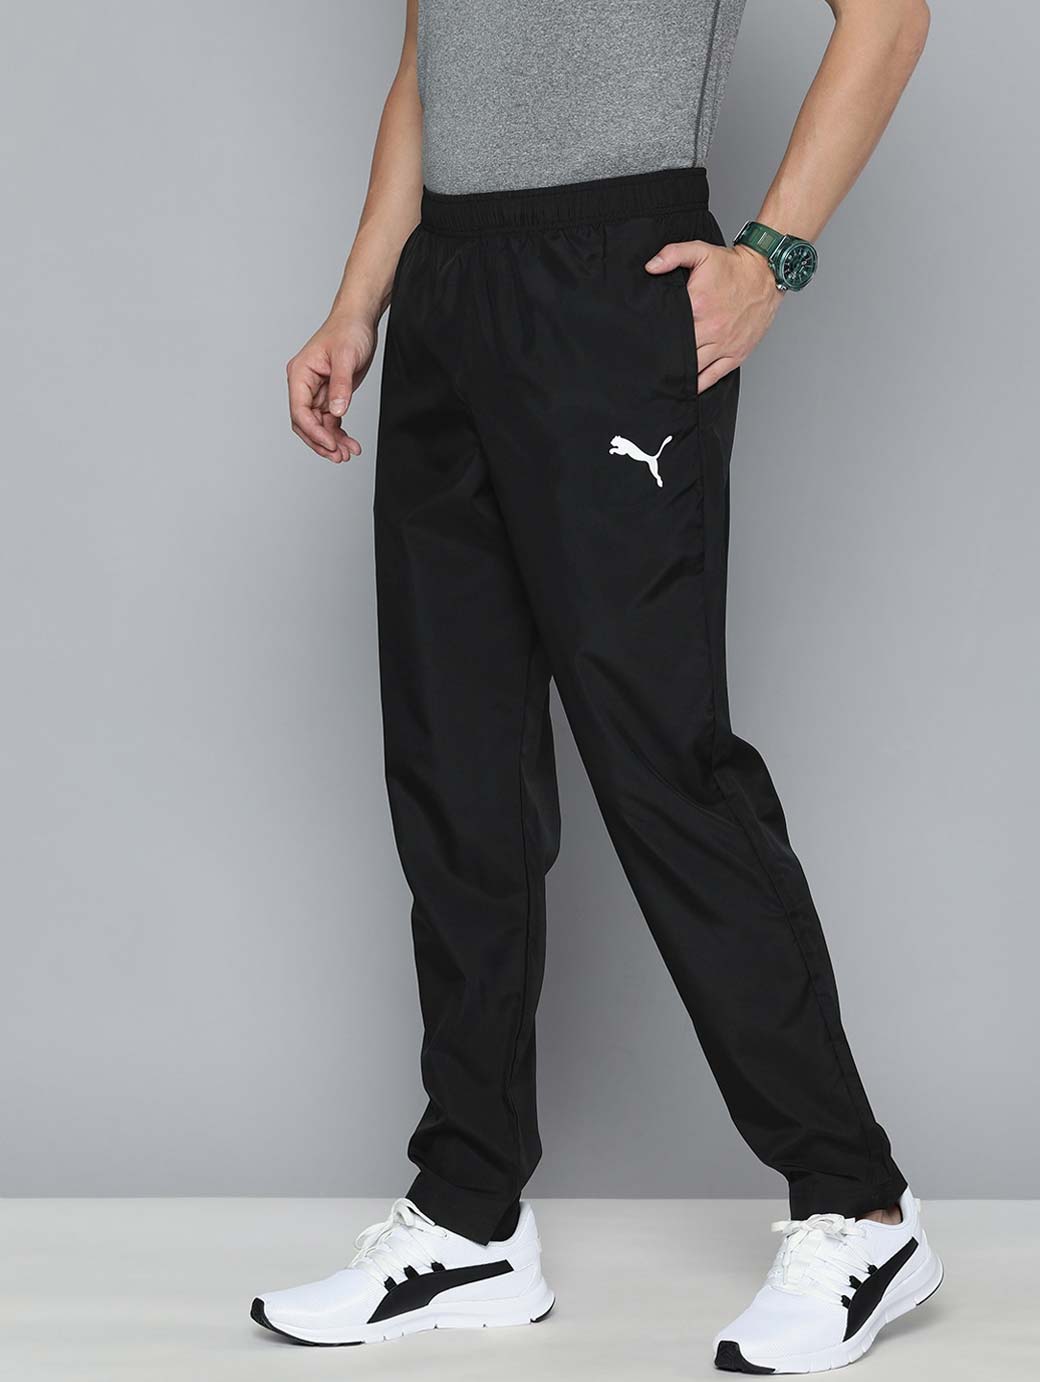 Printed Design Black Track Pants For Men